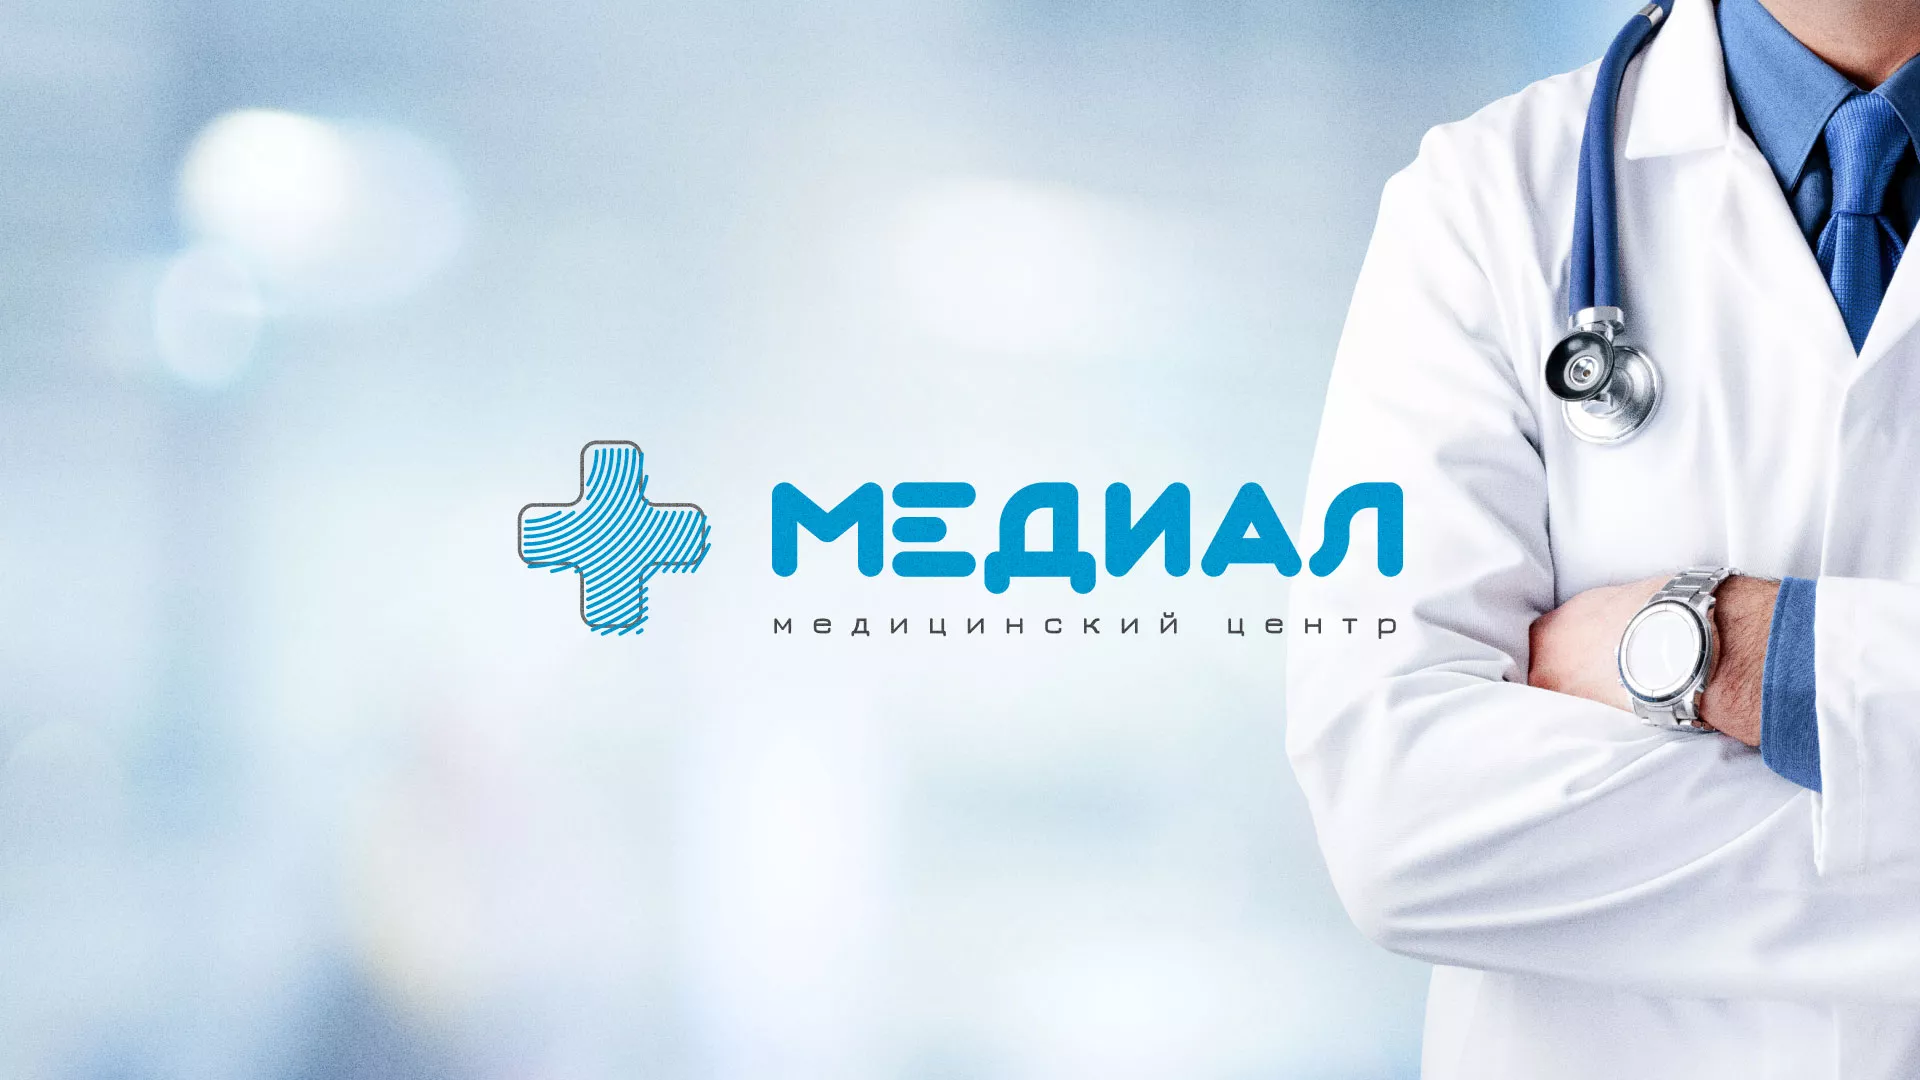 Создание сайта для медицинского центра «Медиал» в Звенигово